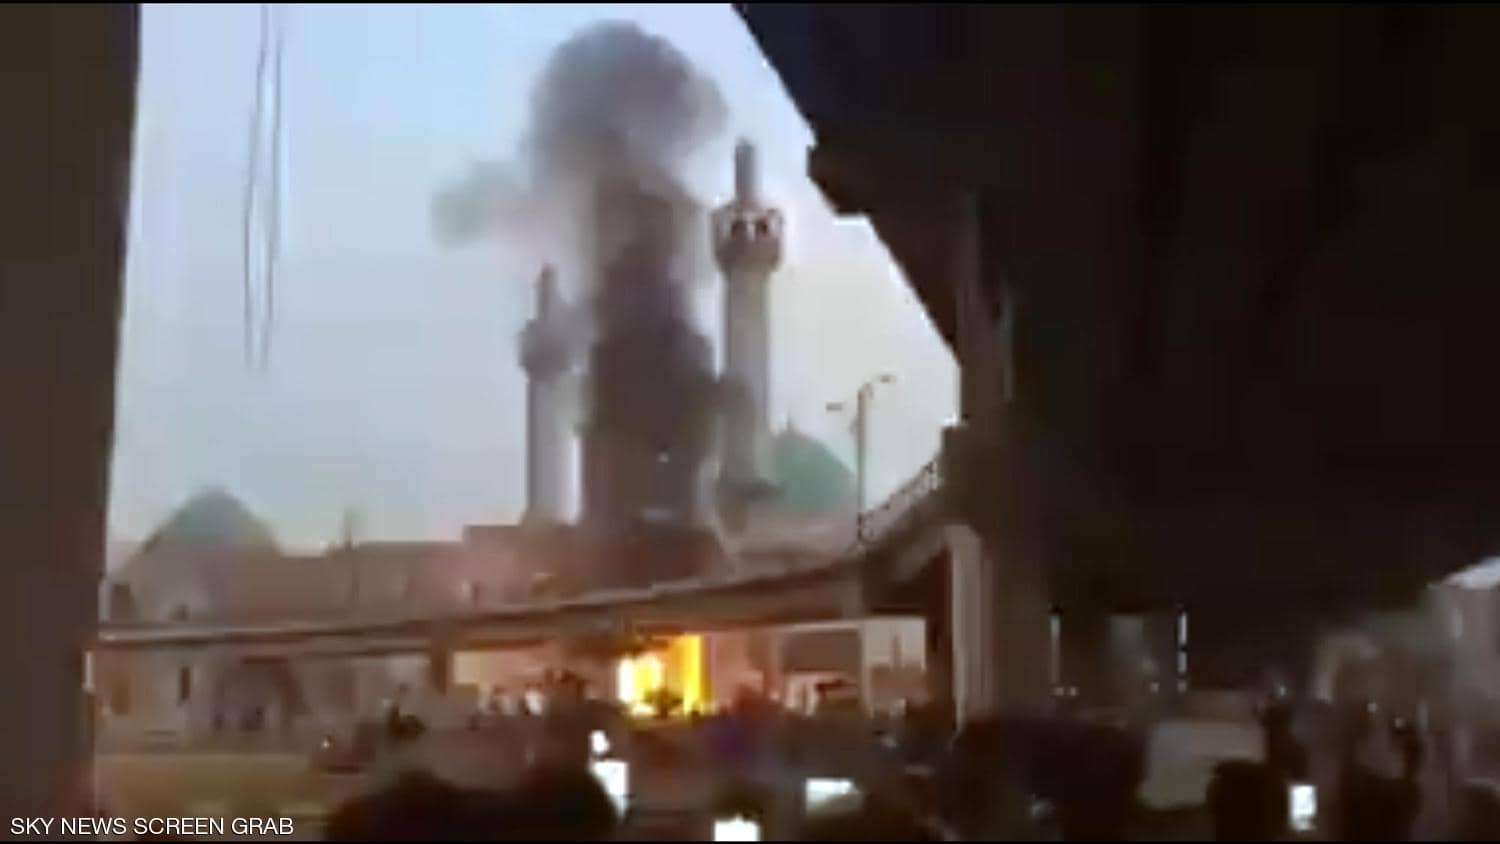 المحتجون بالعراق يحرقون مدخل ضريح بمدينة النجف